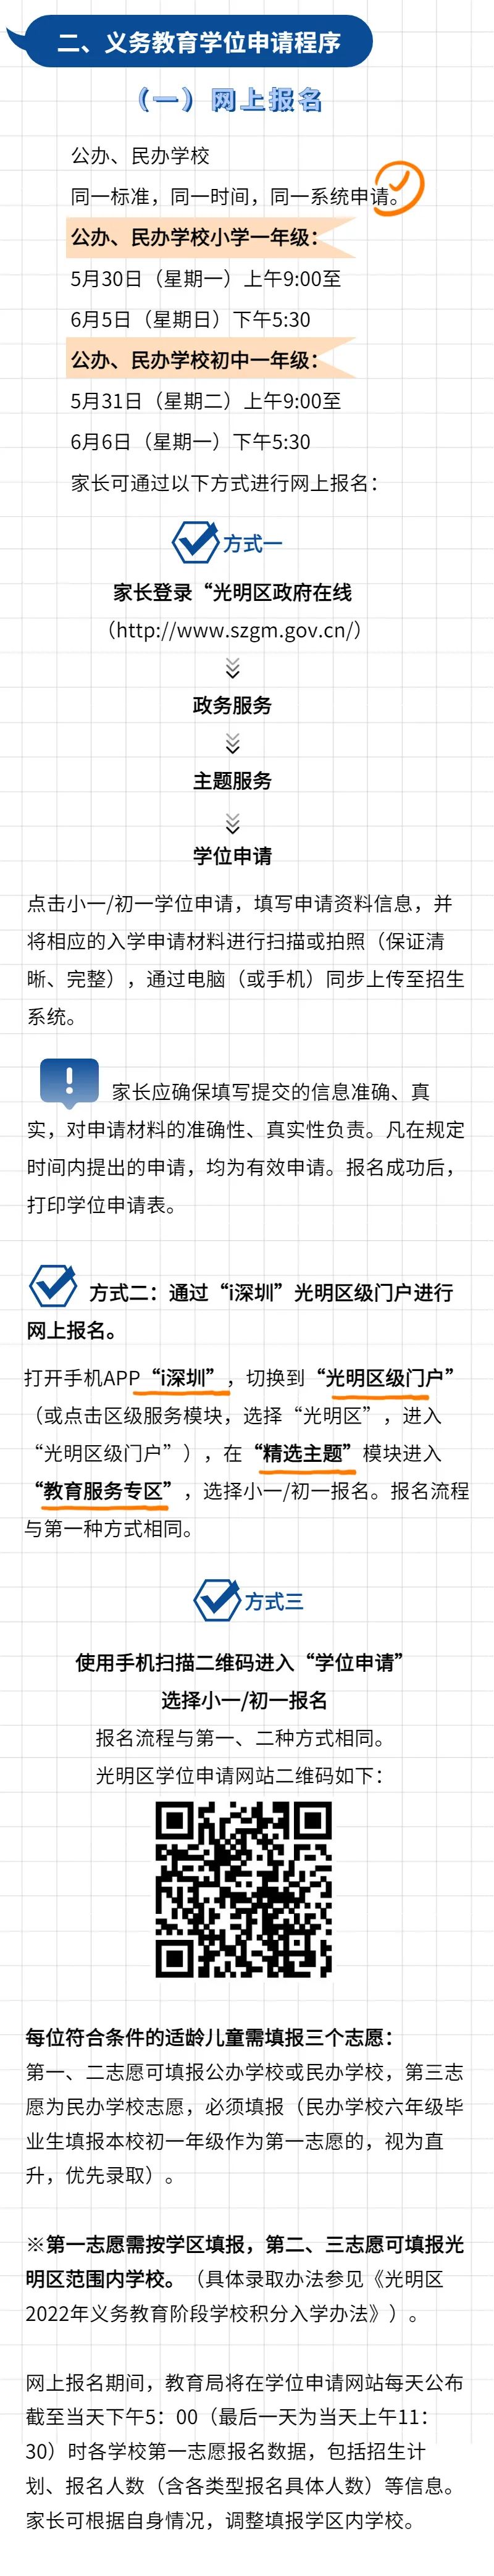 2022深圳光明区小一初一学位申请指南